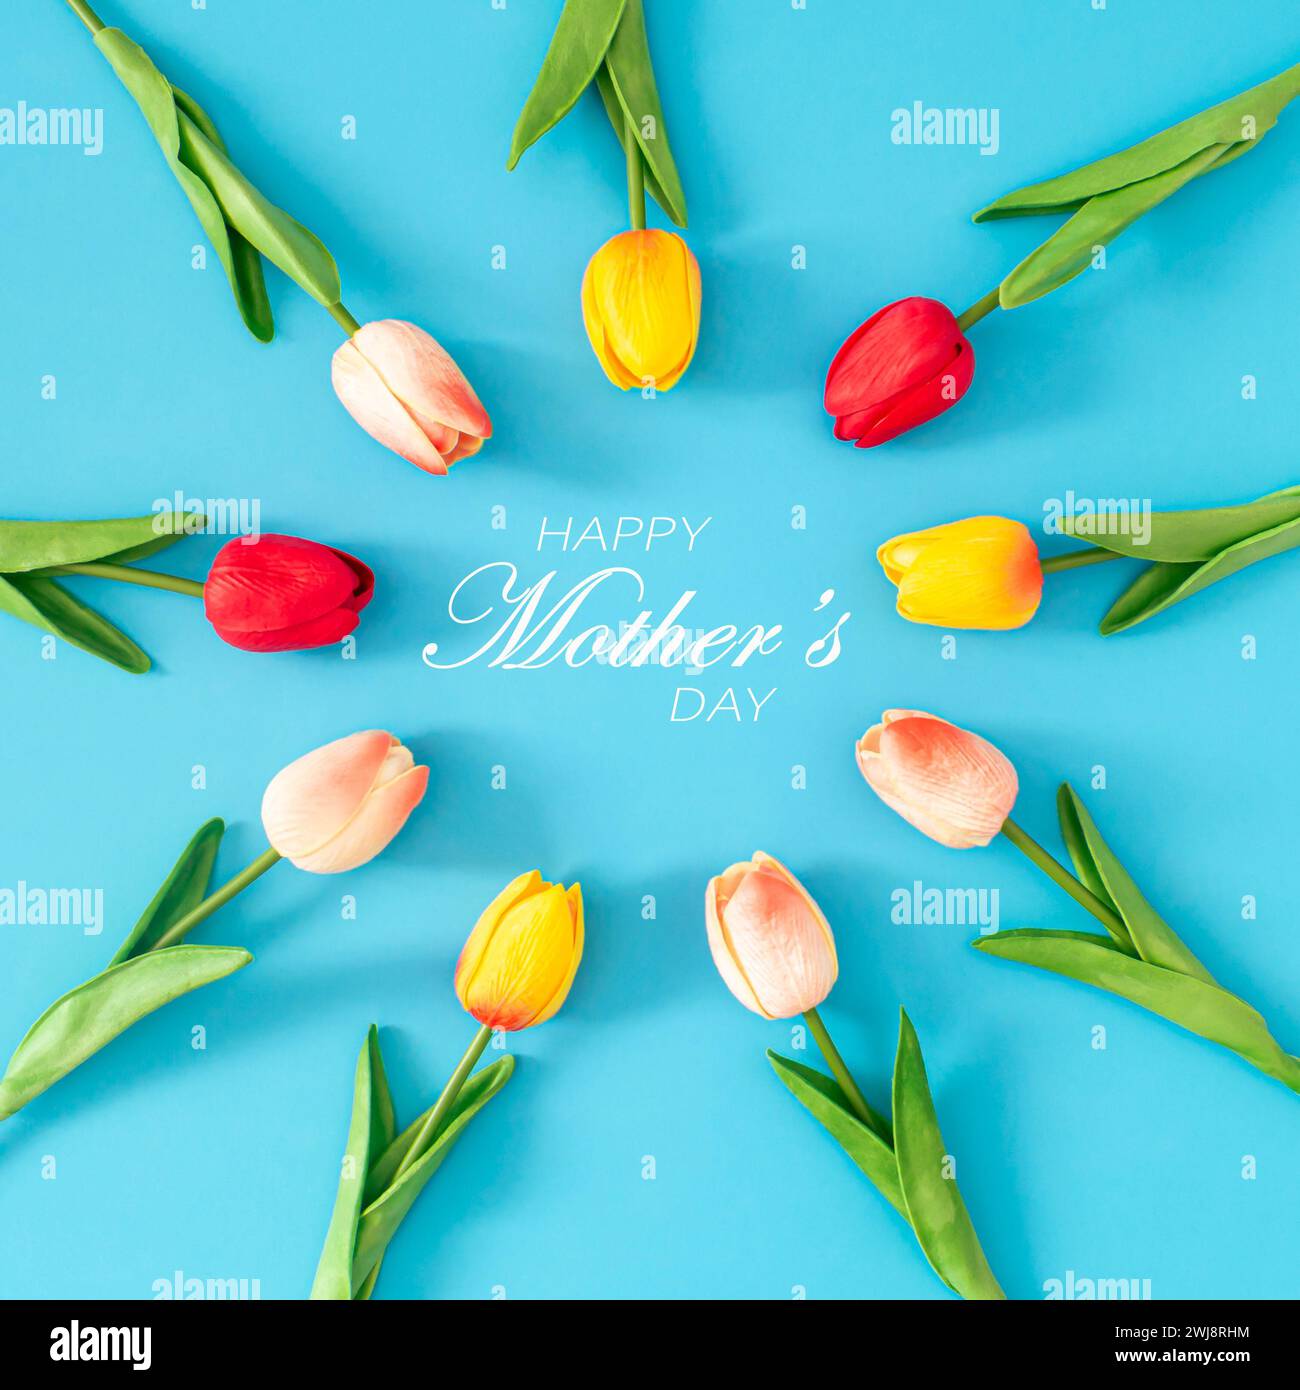 Composizione creativa primaverile realizzata con fiori di tulipani colorati con testo "Happy Mother's Day" su sfondo blu. Concetto minimalista per la giornata della mamma. Foto Stock